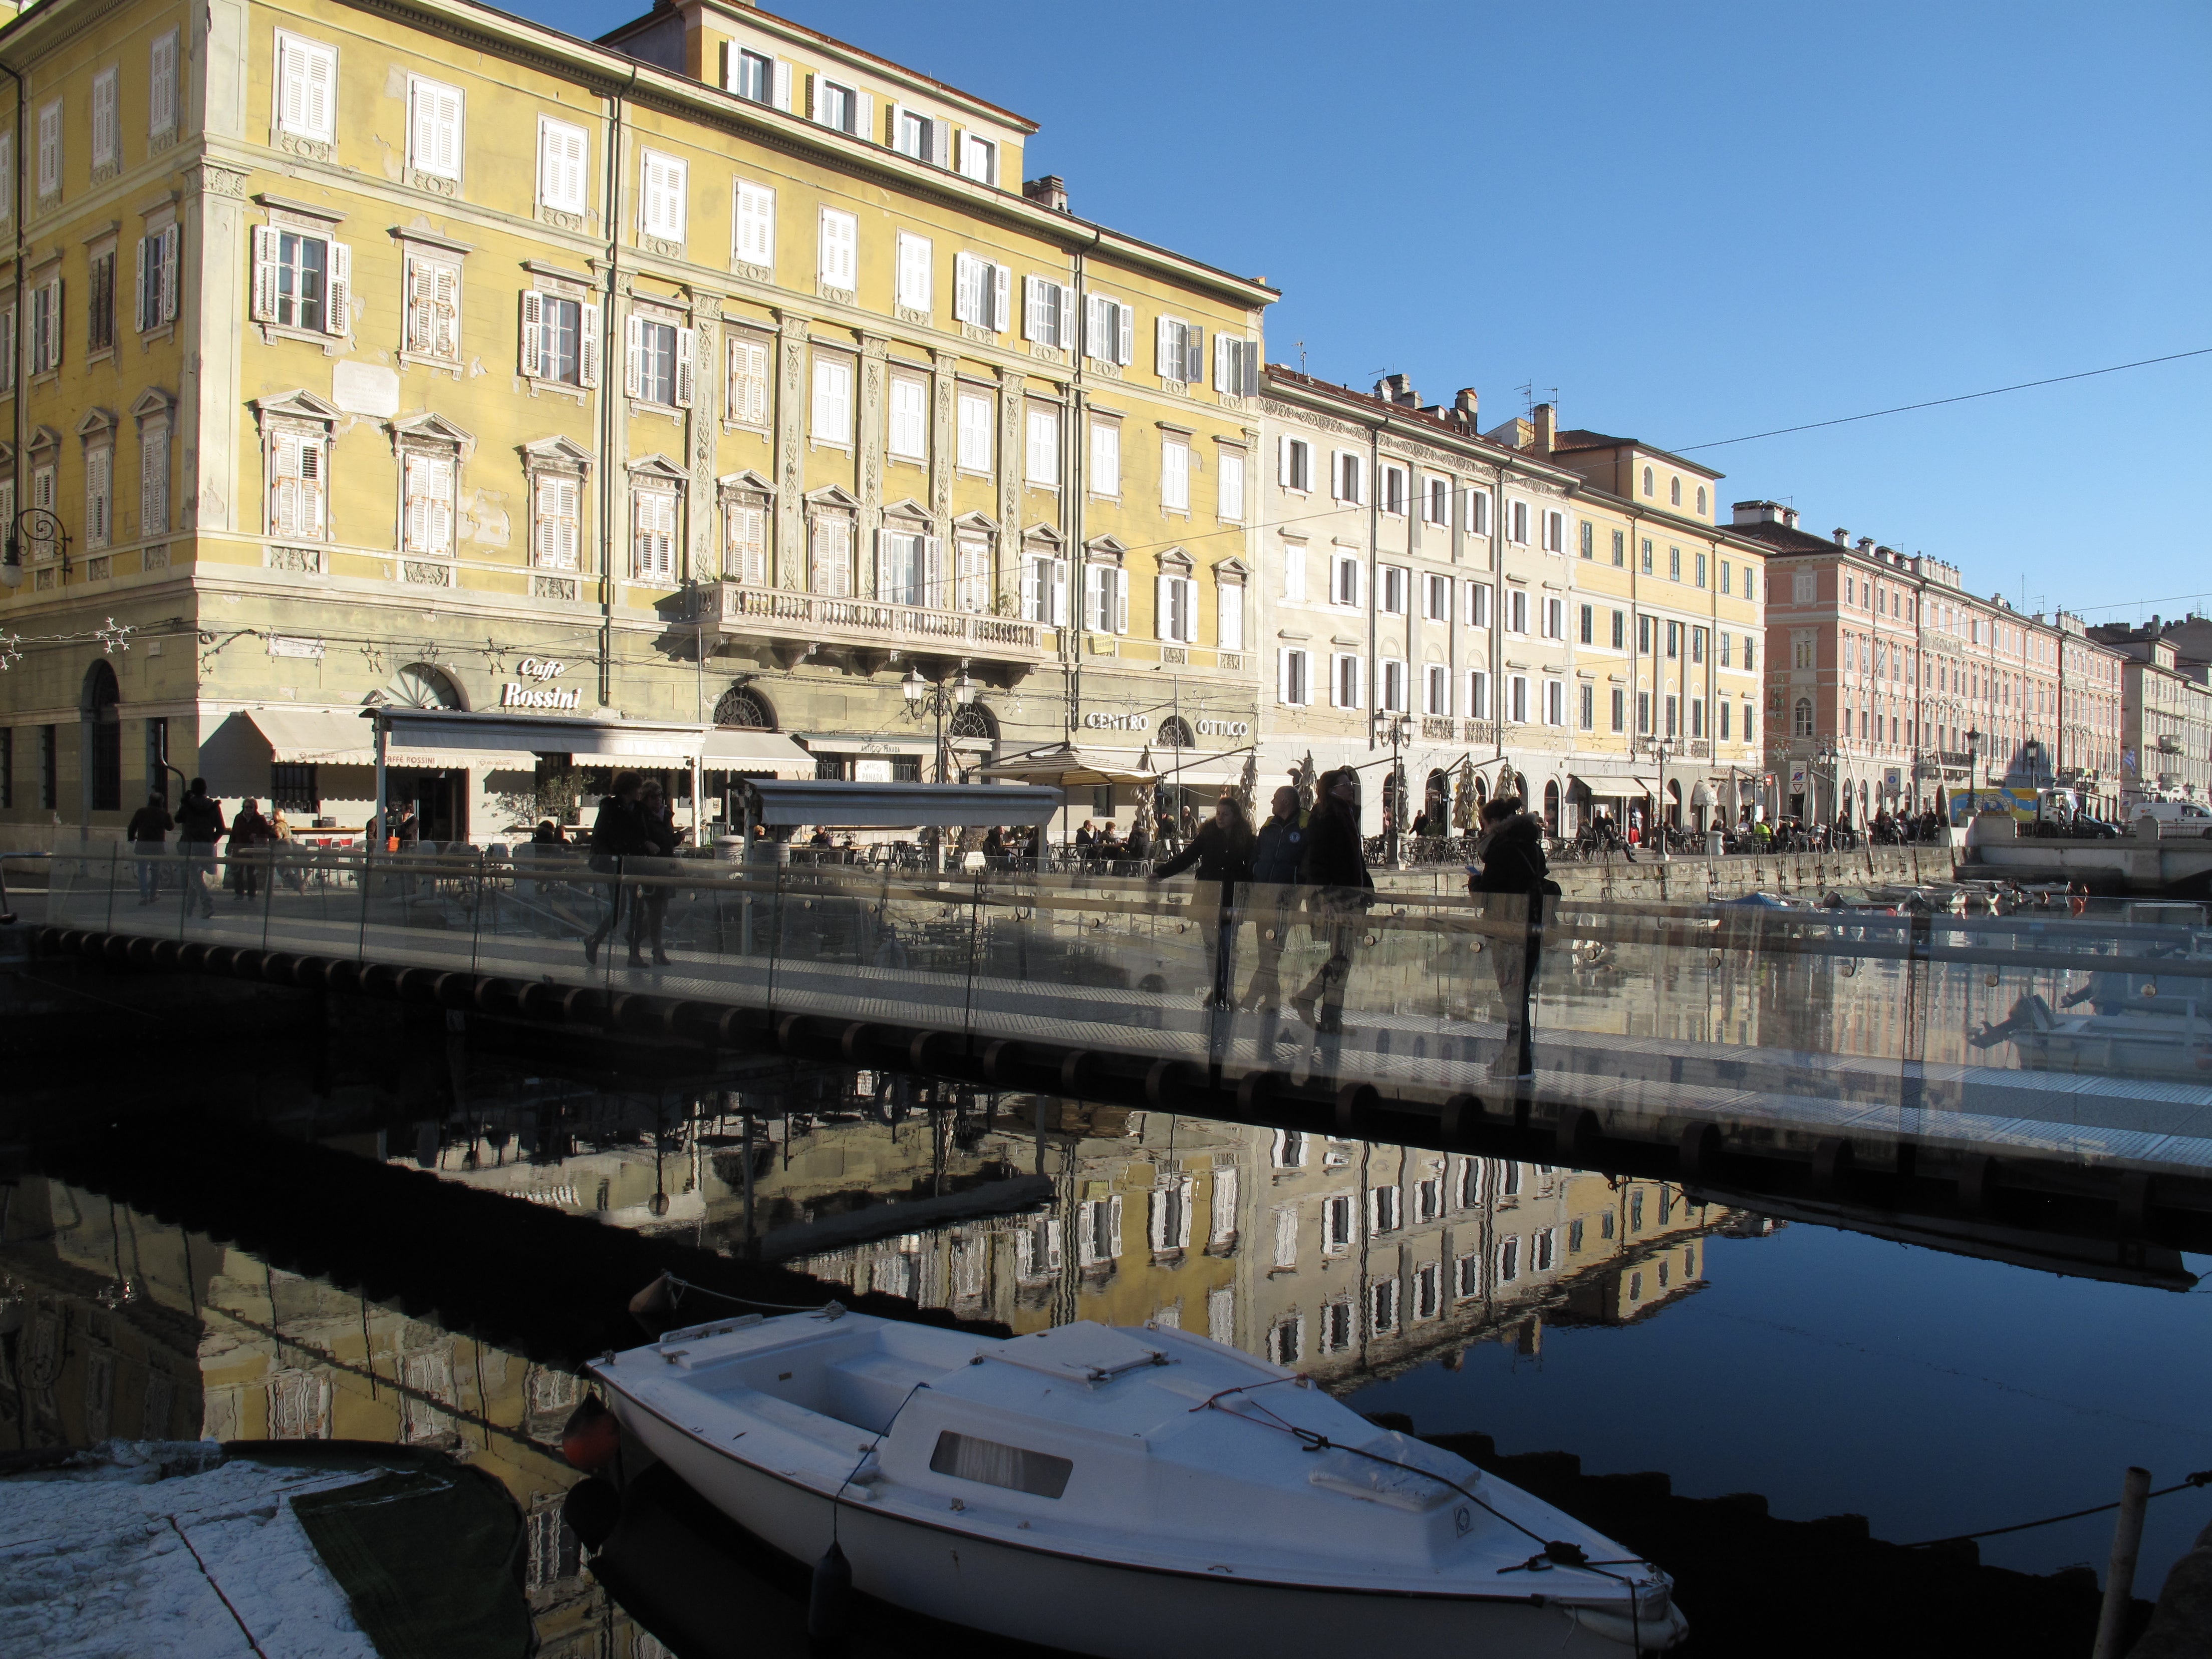 Favourite corner: Caffe Rossini in Trieste, Italy